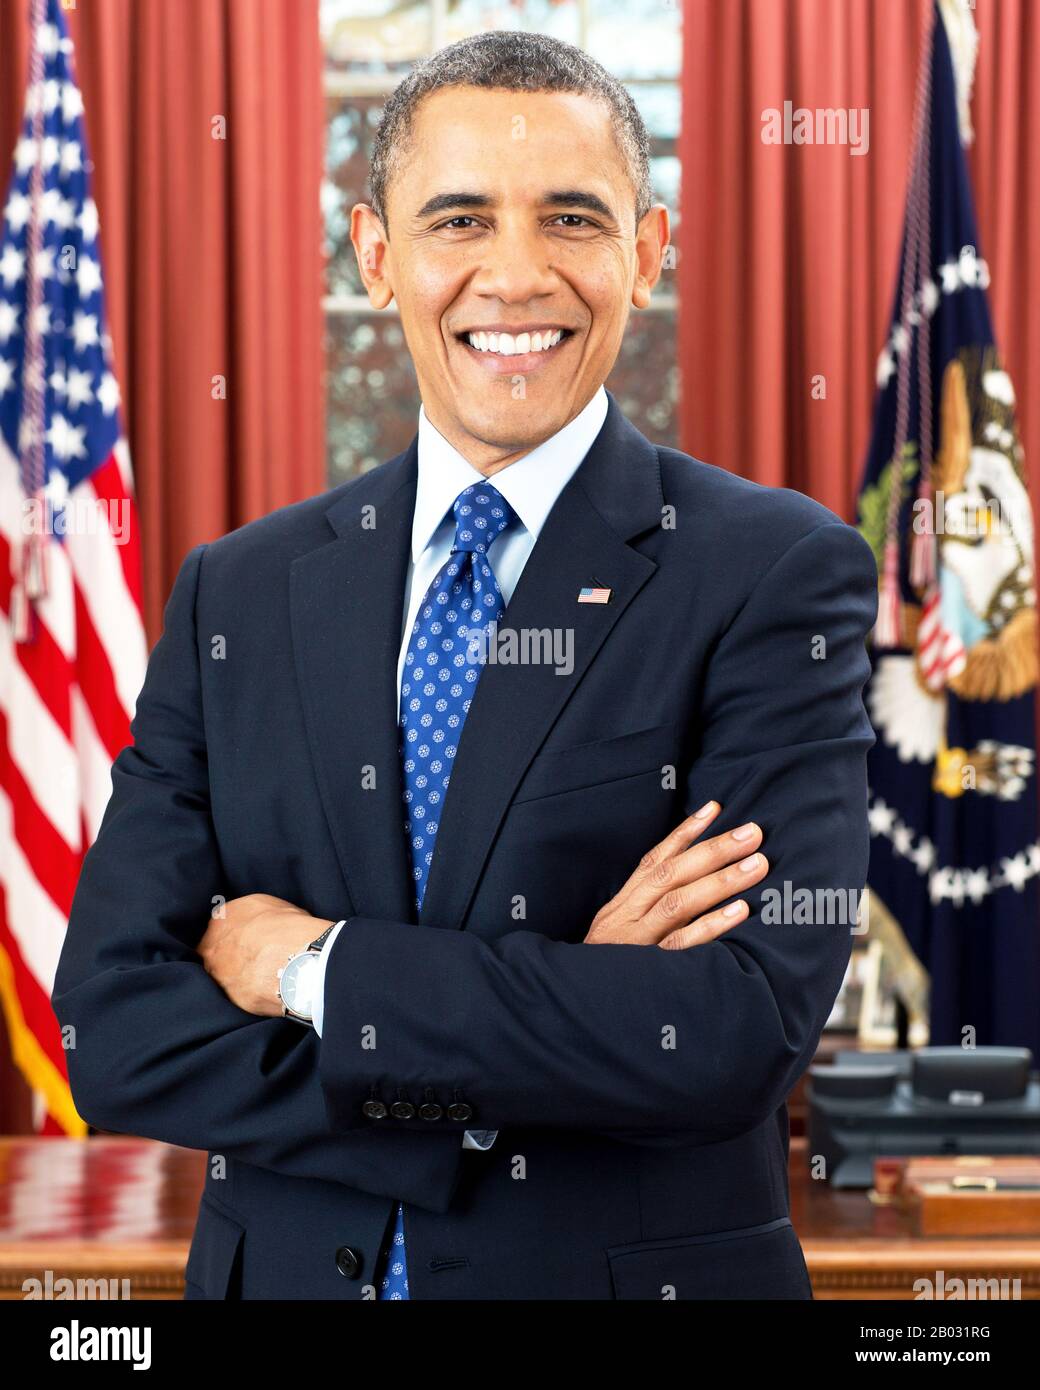 Barack Hussein Obama II (* 4. August 1961) ist der 44. Und derzeitige Präsident der Vereinigten Staaten sowie der erste afroamerikanische Amerikaner, der das Amt innehatte. Obama wurde in Honolulu, Hawaii geboren und ist Absolvent der Columbia University und der Harvard Law School, wo er als präsident der Harvard Law Review tätig war. Stockfoto